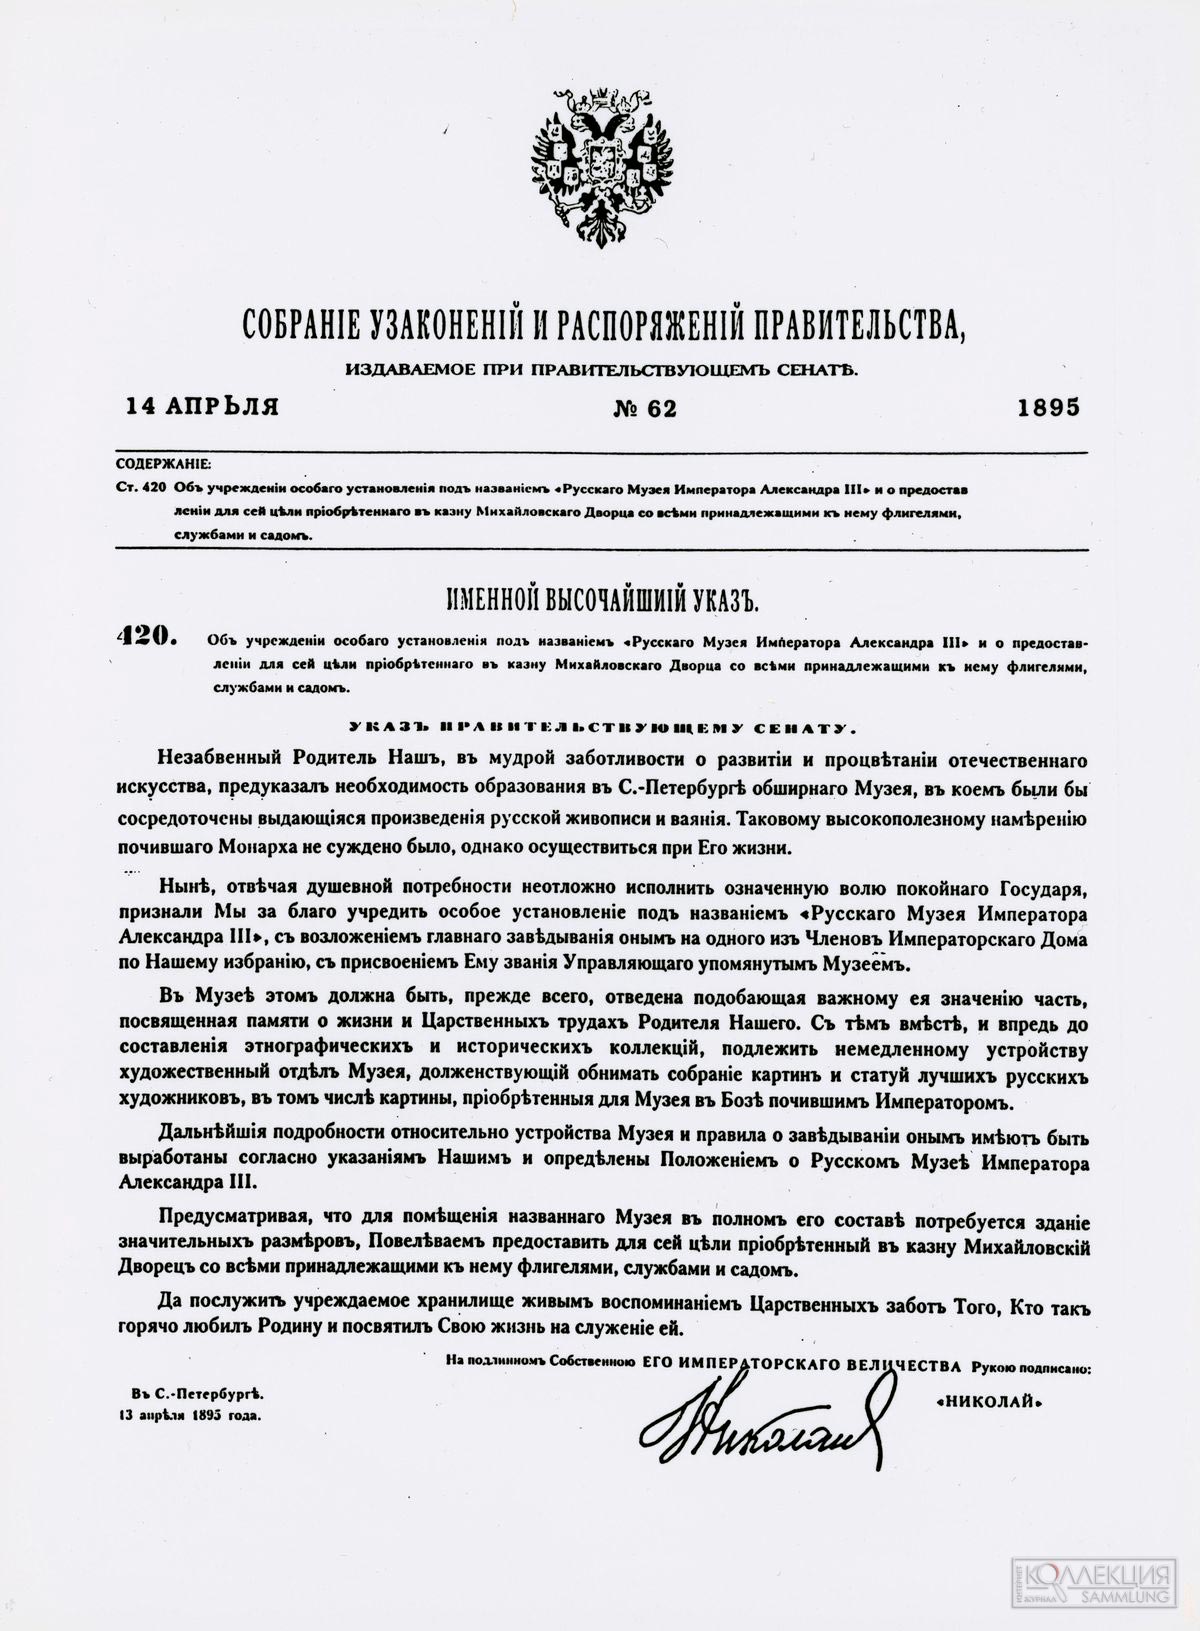 Указ об учреждении Русского музея императора Александра III